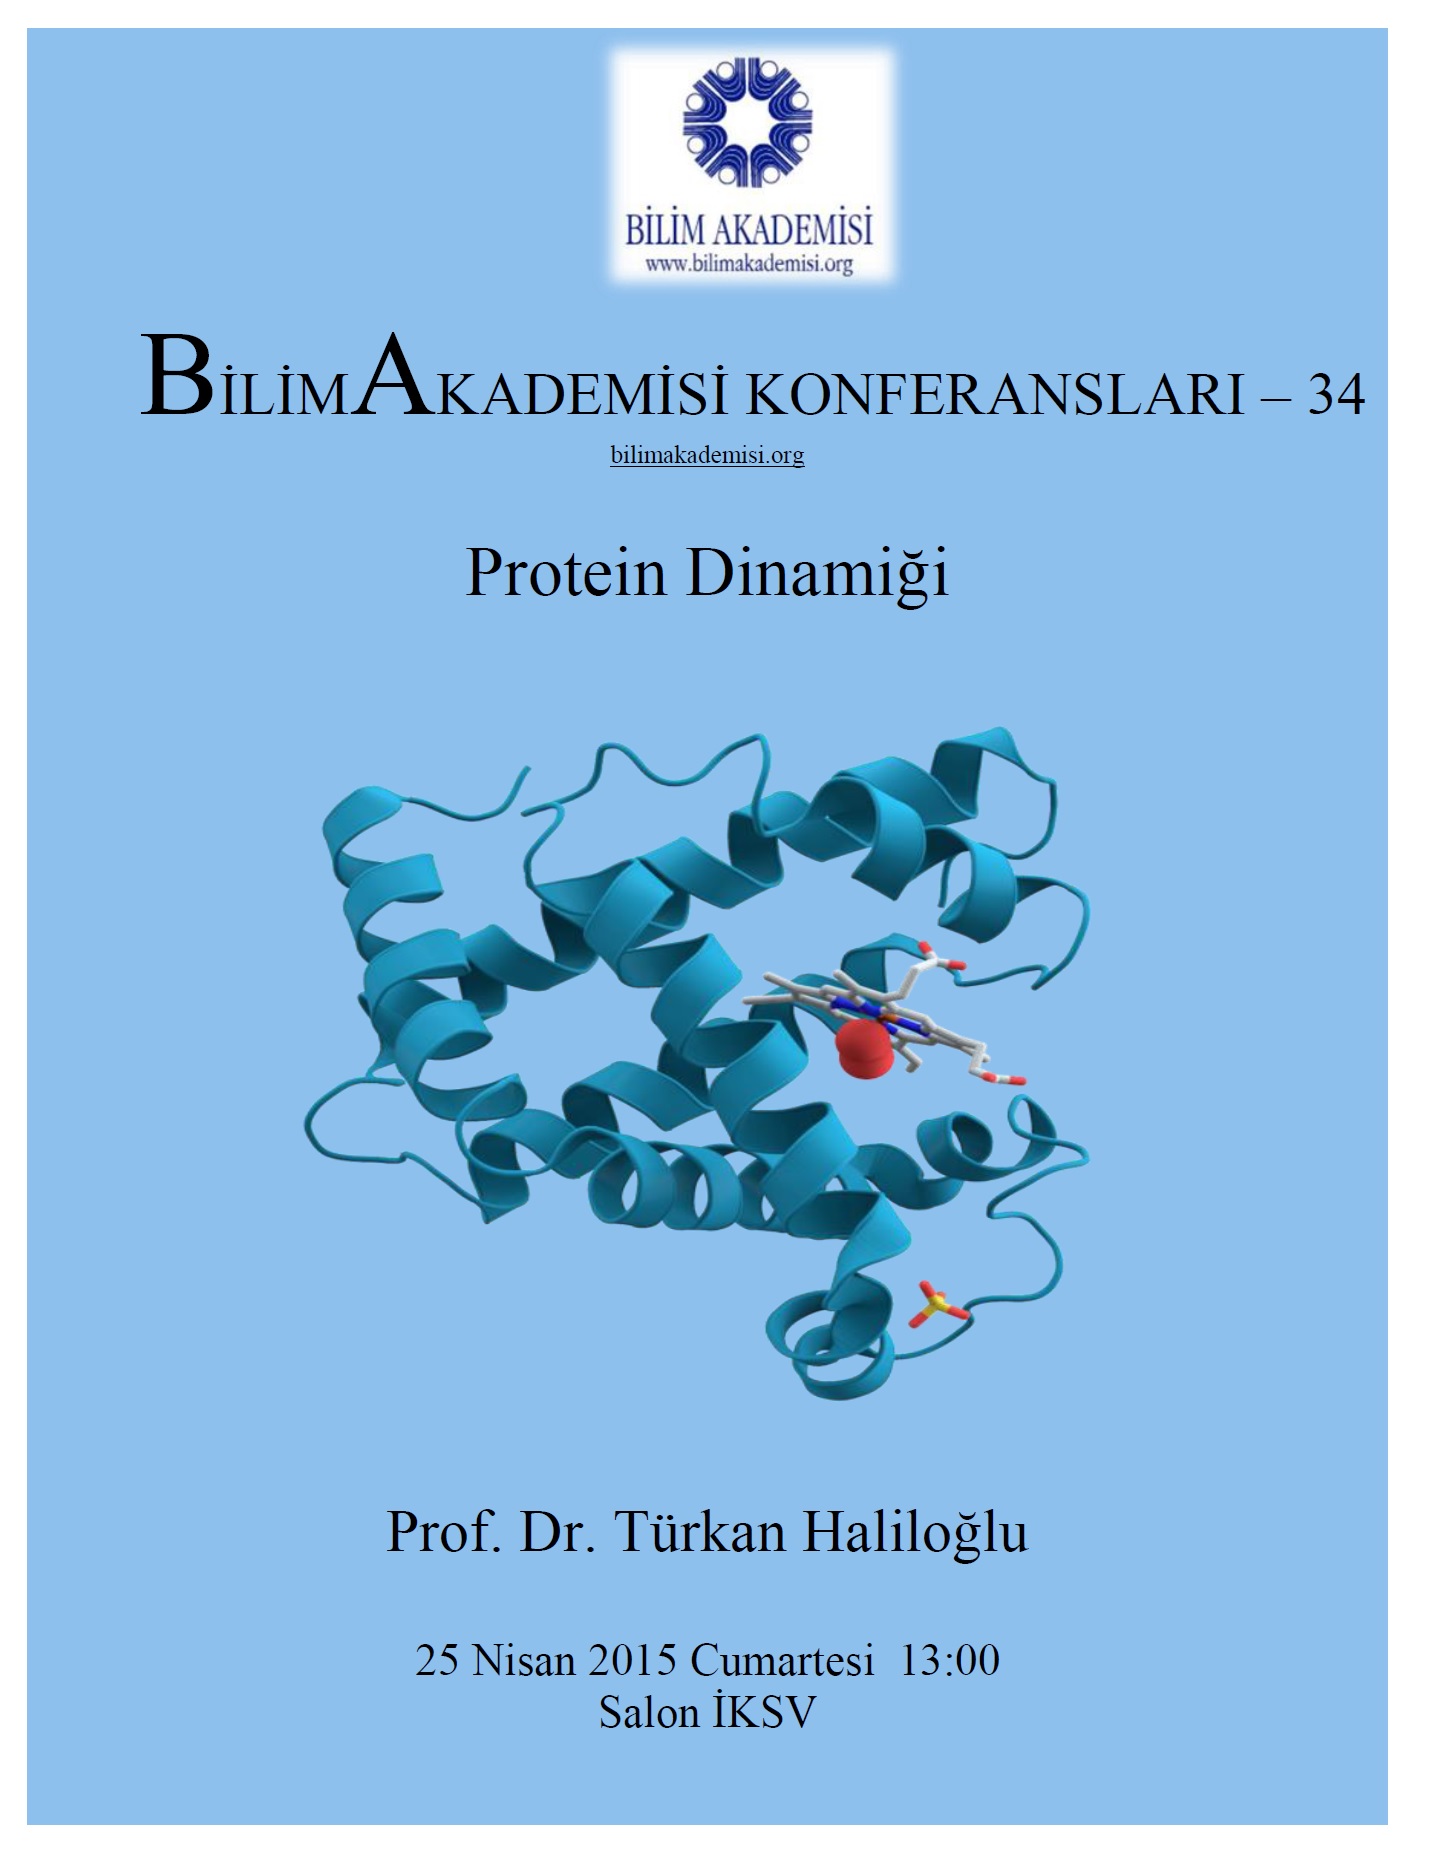 Protein Dynamics – Speaker: Türkan Haliloğlu